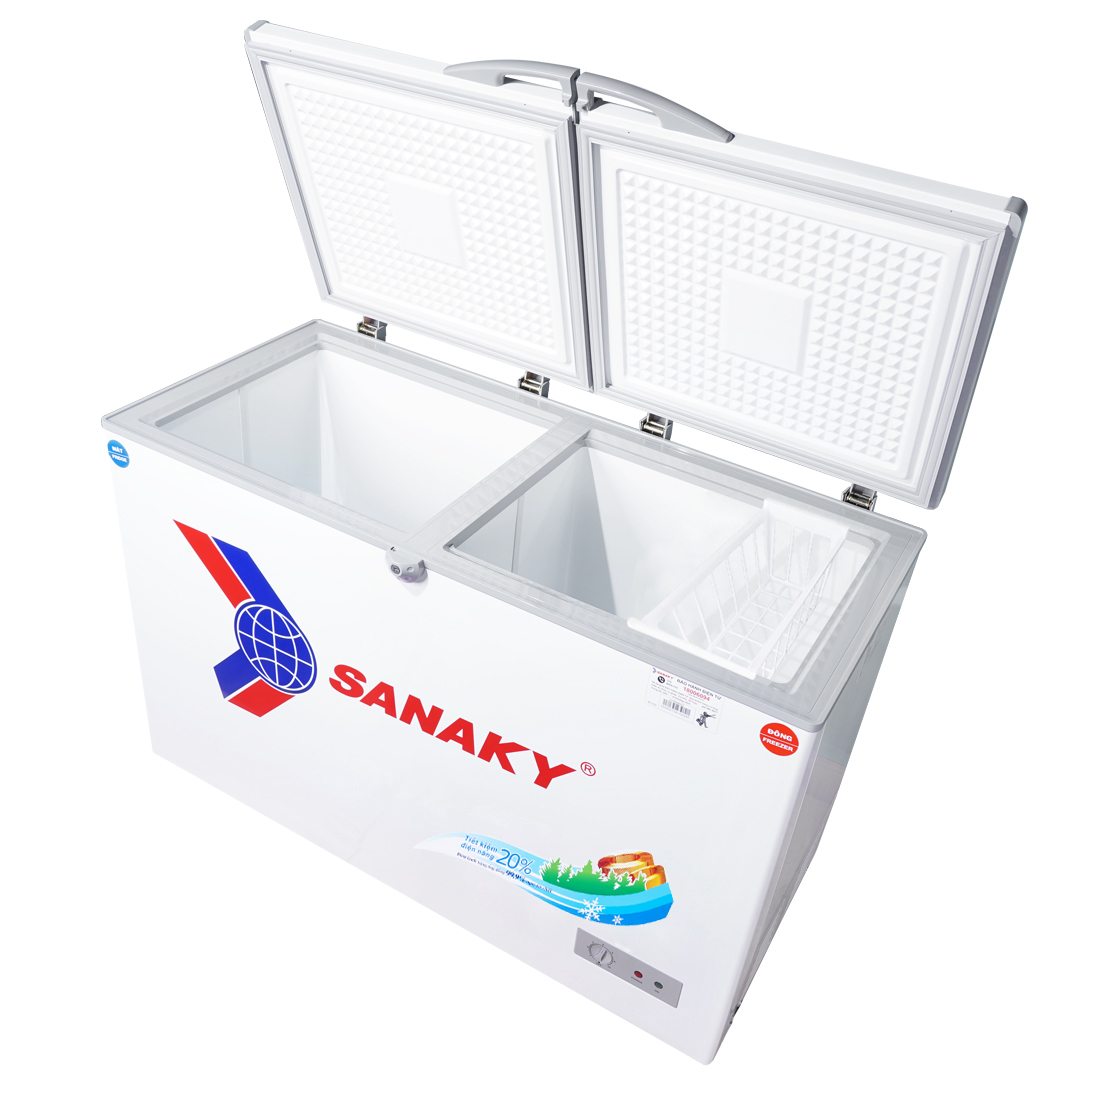 Tủ Đông Sanaky VH-3699W1